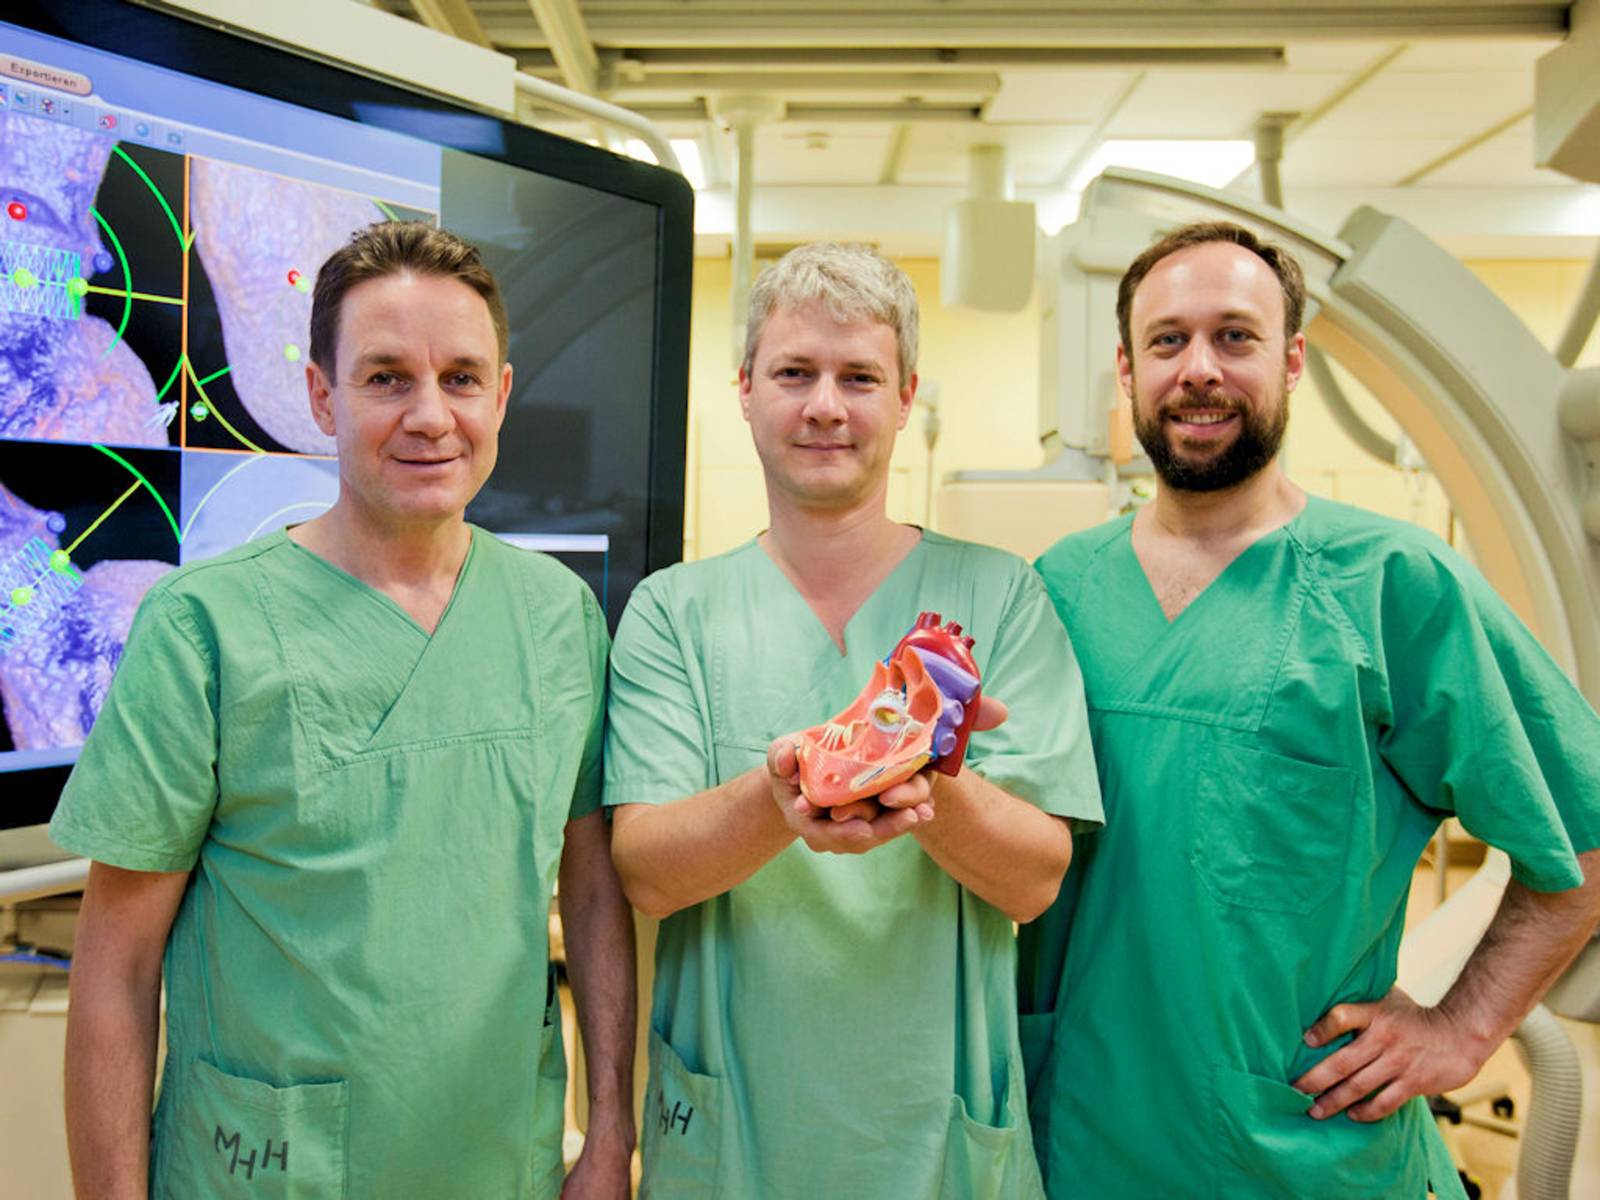 Drei Männer in grünern Kitteln, einer hält ein Modell einer Organs.